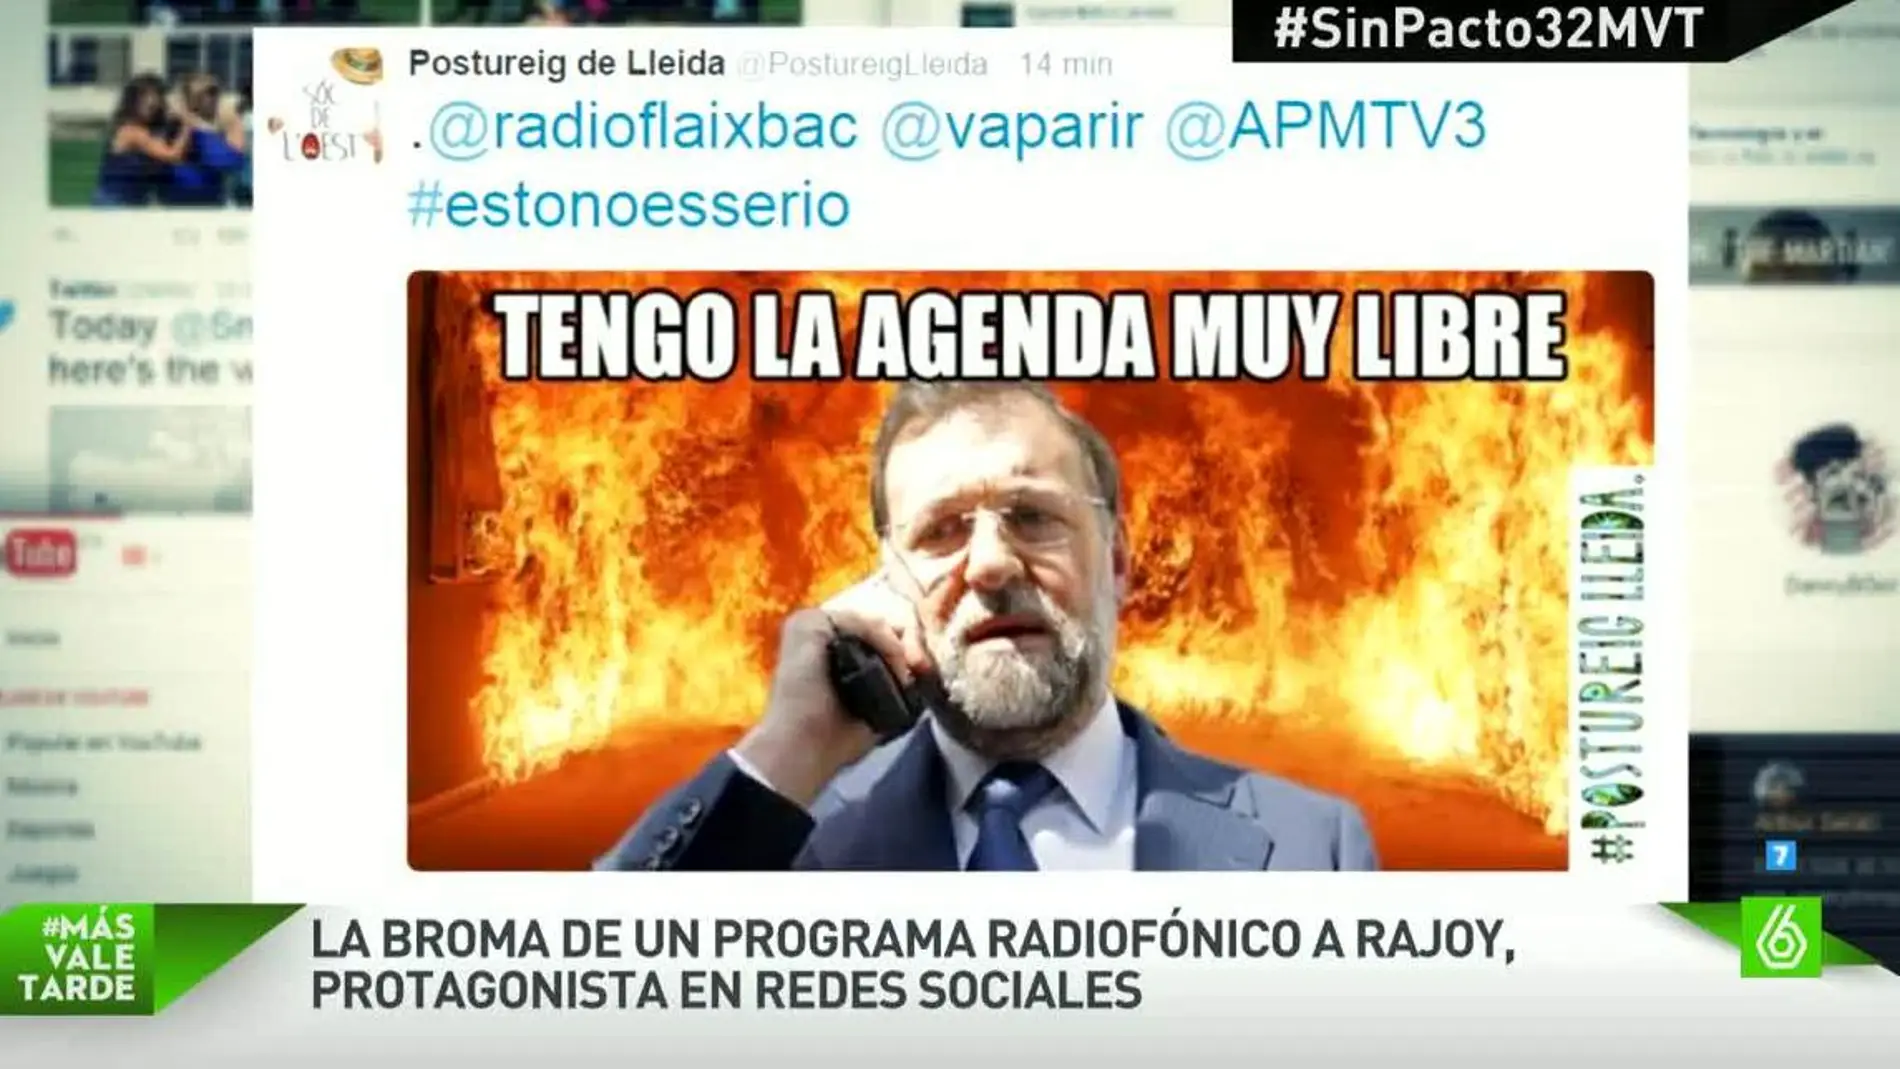 Broma radiofónica de Rajoy, en redes sociales